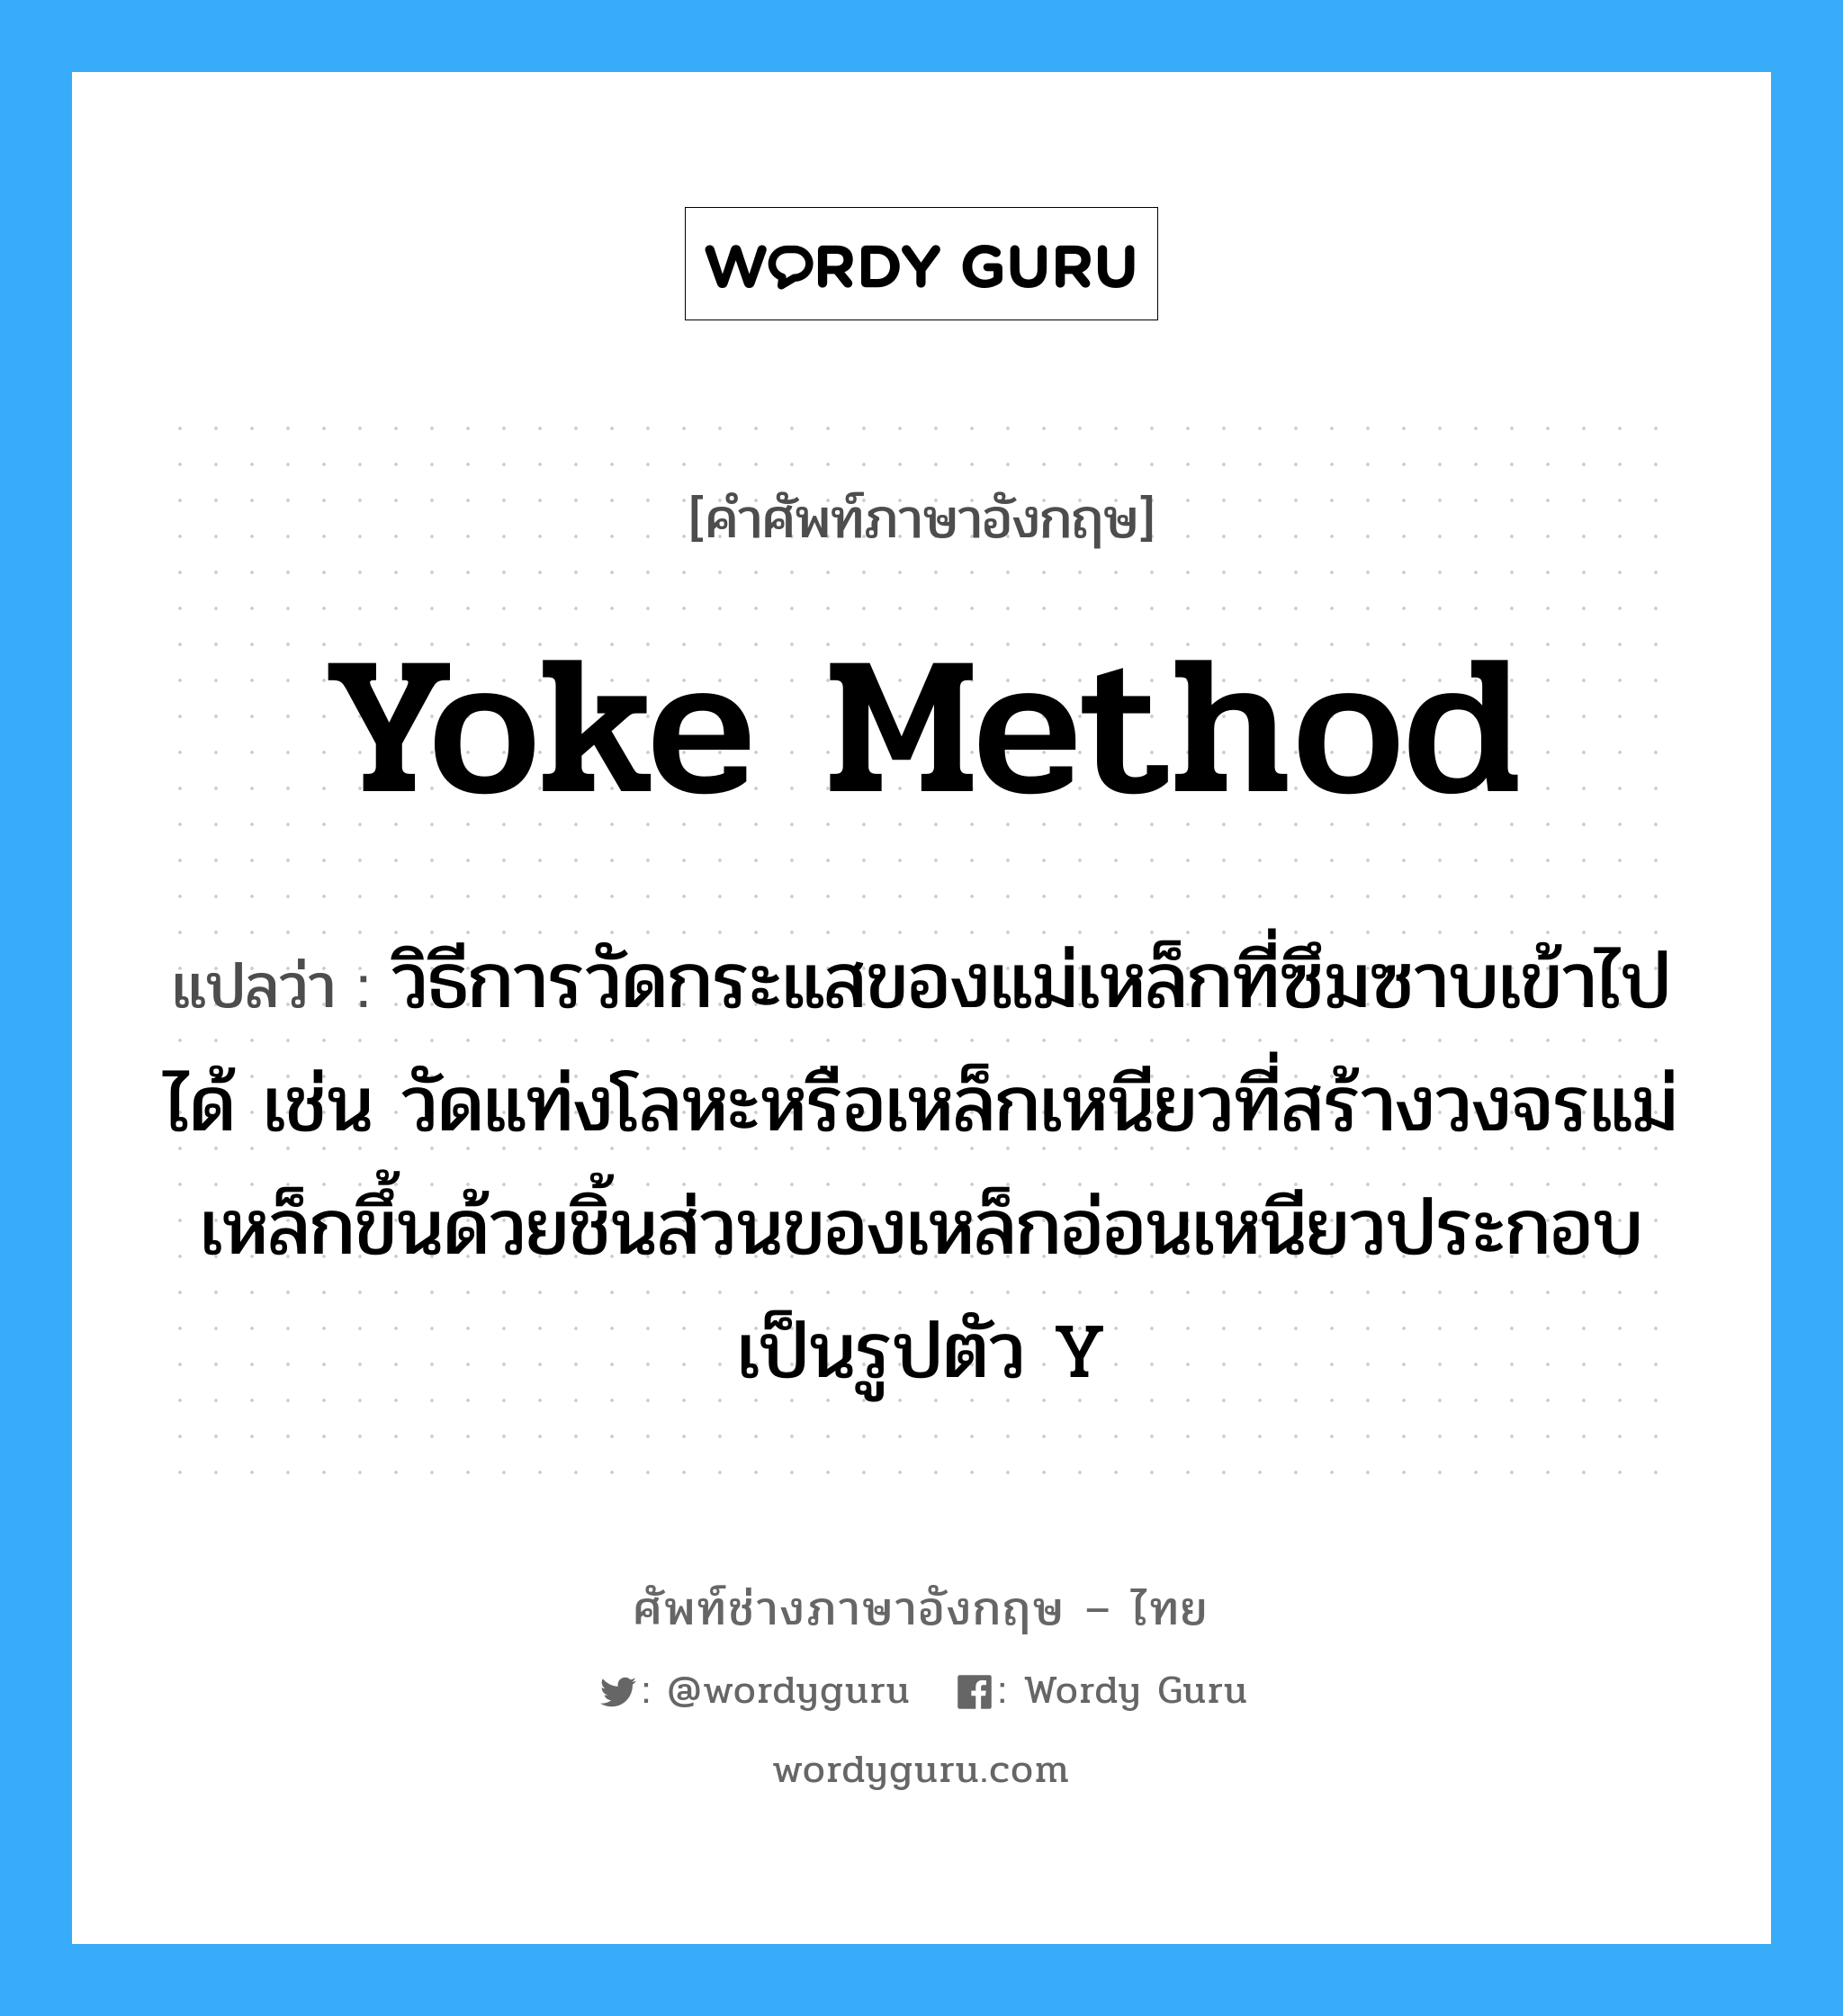 yoke method แปลว่า?, คำศัพท์ช่างภาษาอังกฤษ - ไทย yoke method คำศัพท์ภาษาอังกฤษ yoke method แปลว่า วิธีการวัดกระแสของแม่เหล็กที่ซึมซาบเข้าไปได้ เช่น วัดแท่งโลหะหรือเหล็กเหนียวที่สร้างวงจรแม่เหล็กขึ้นด้วยชิ้นส่วนของเหล็กอ่อนเหนียวประกอบเป็นรูปตัว Y